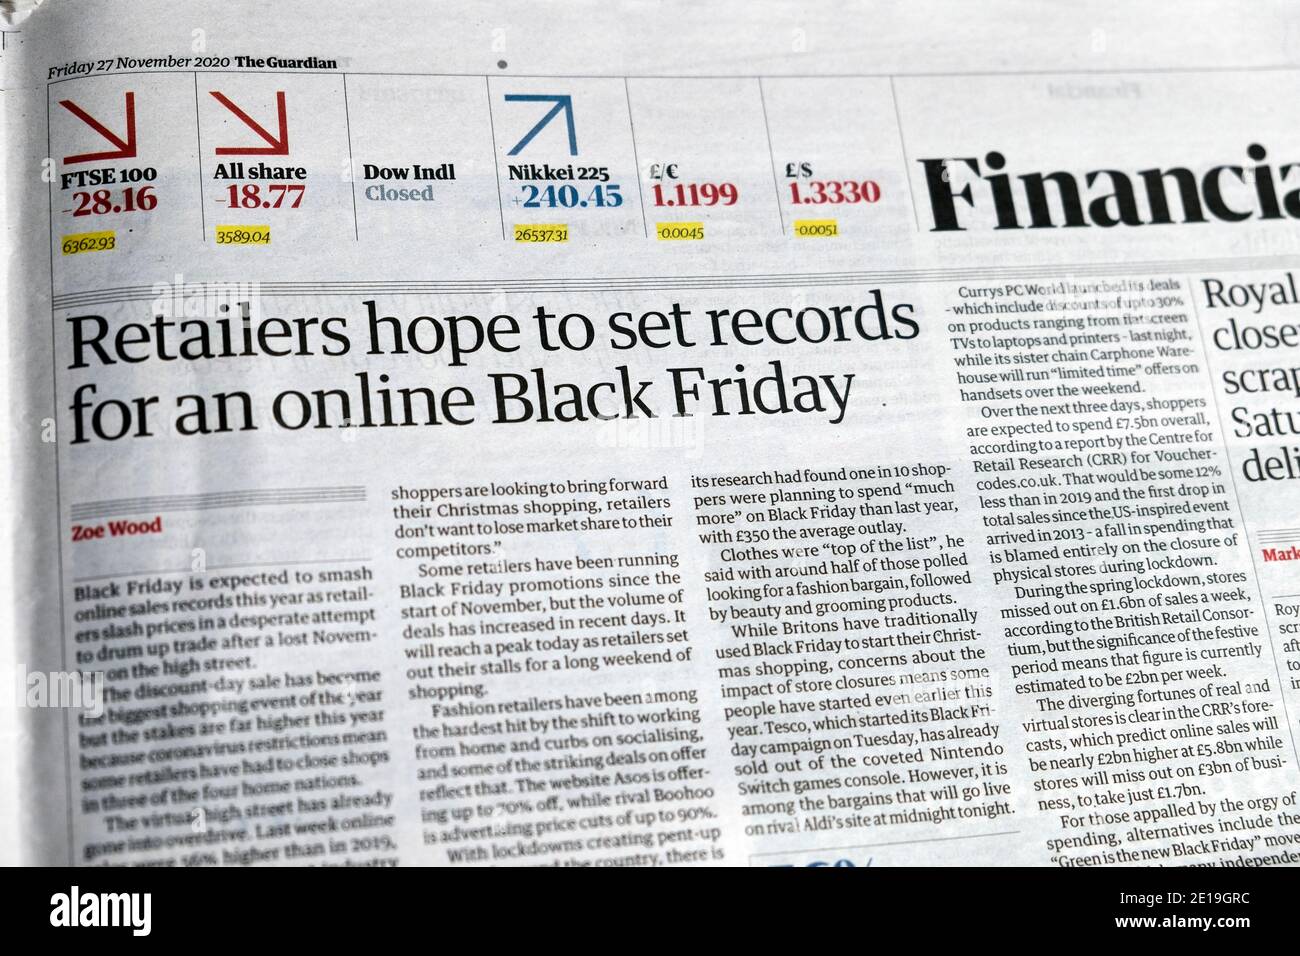 "I rivenditori sperano di impostare record per un Black Friday online" Pagina finanziaria su giornale Guardian titolo 27 novembre 2020 Foto Stock